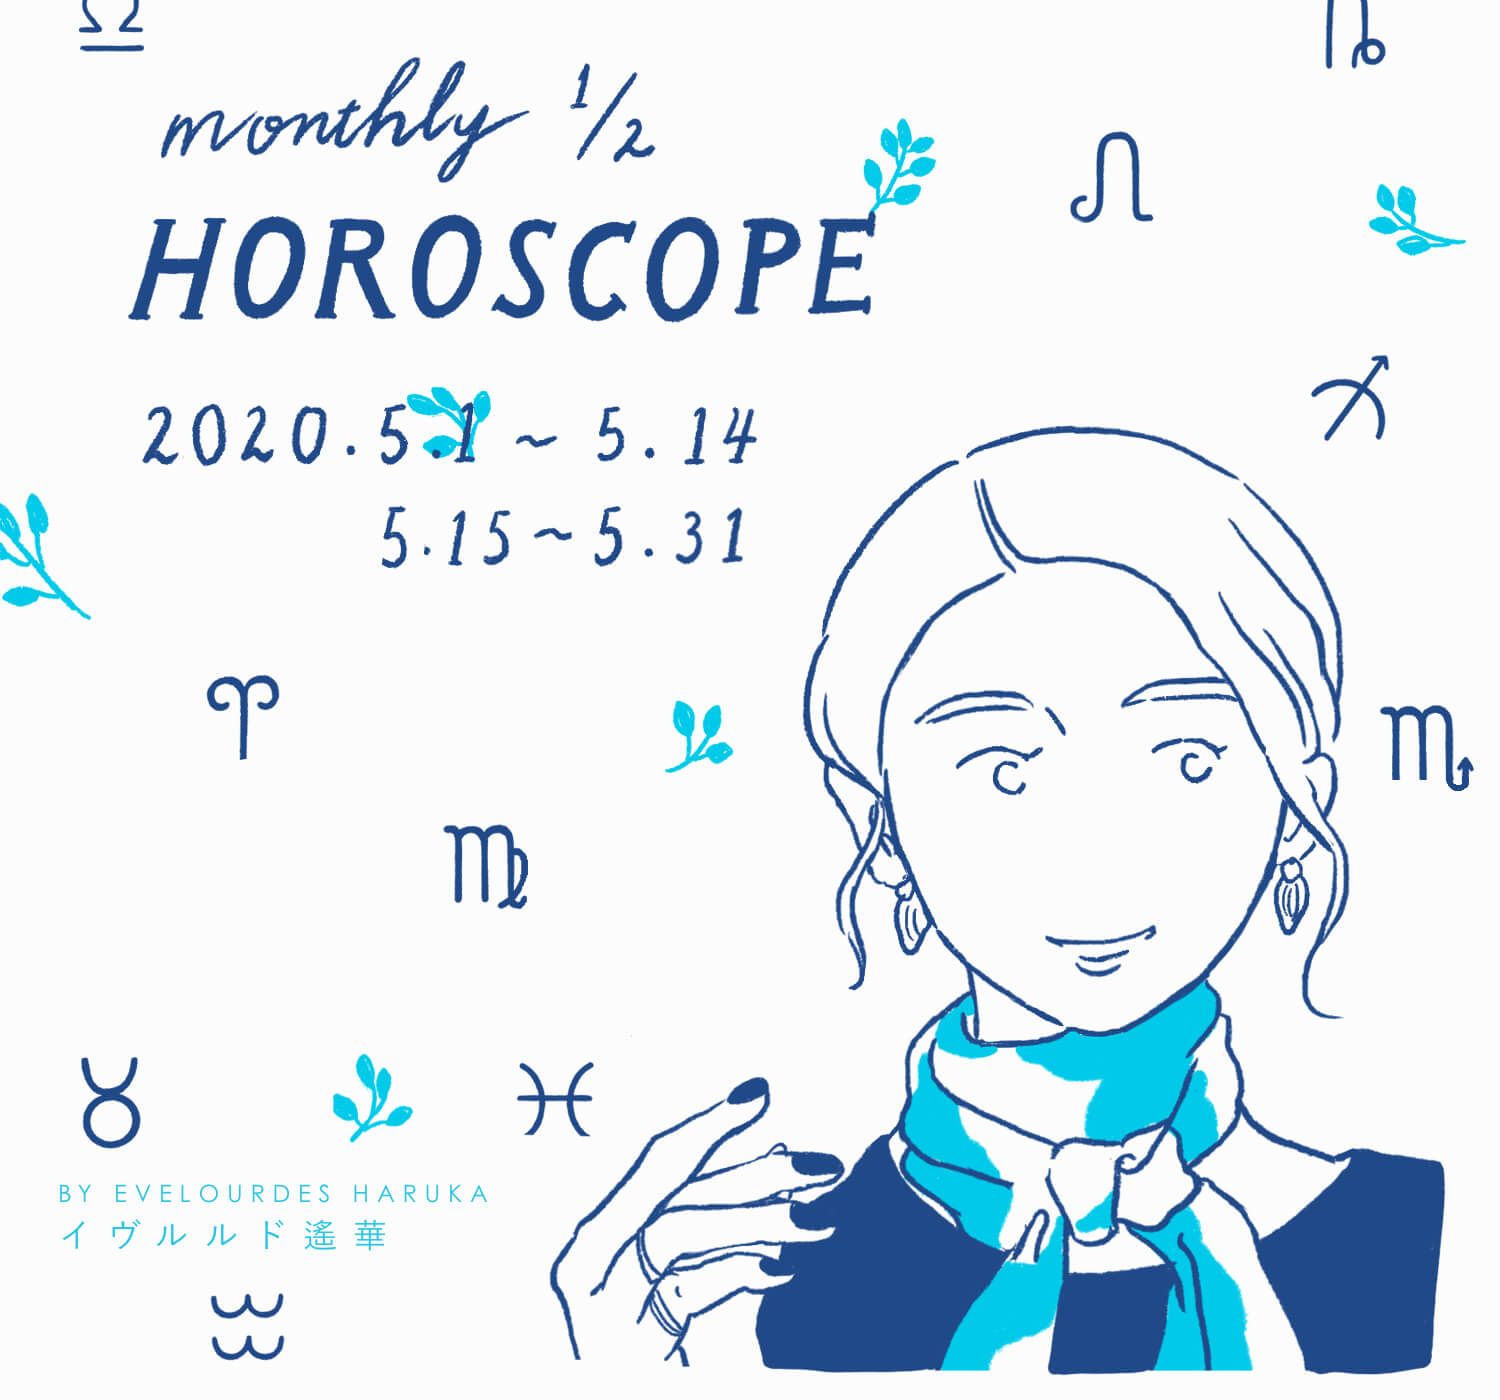 12星座別 5月の運勢 後半 Monthly 1 2 Horoscope Baycrew S Store